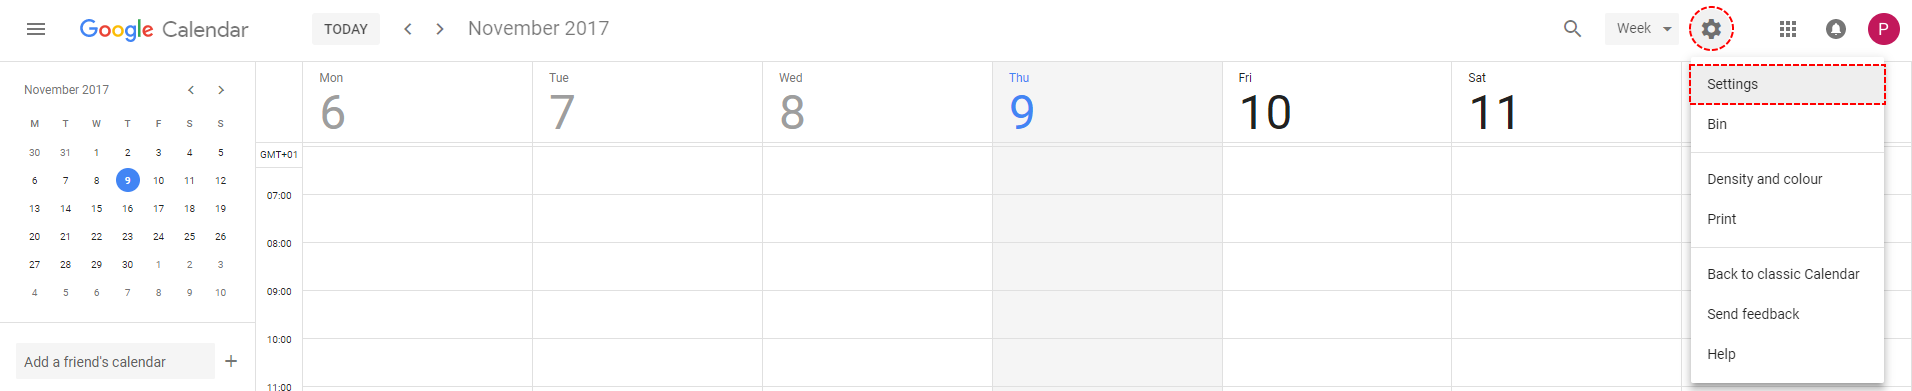 How to create new Google Calendar step 2 - Google Calendar Vtiger 7 Sync 